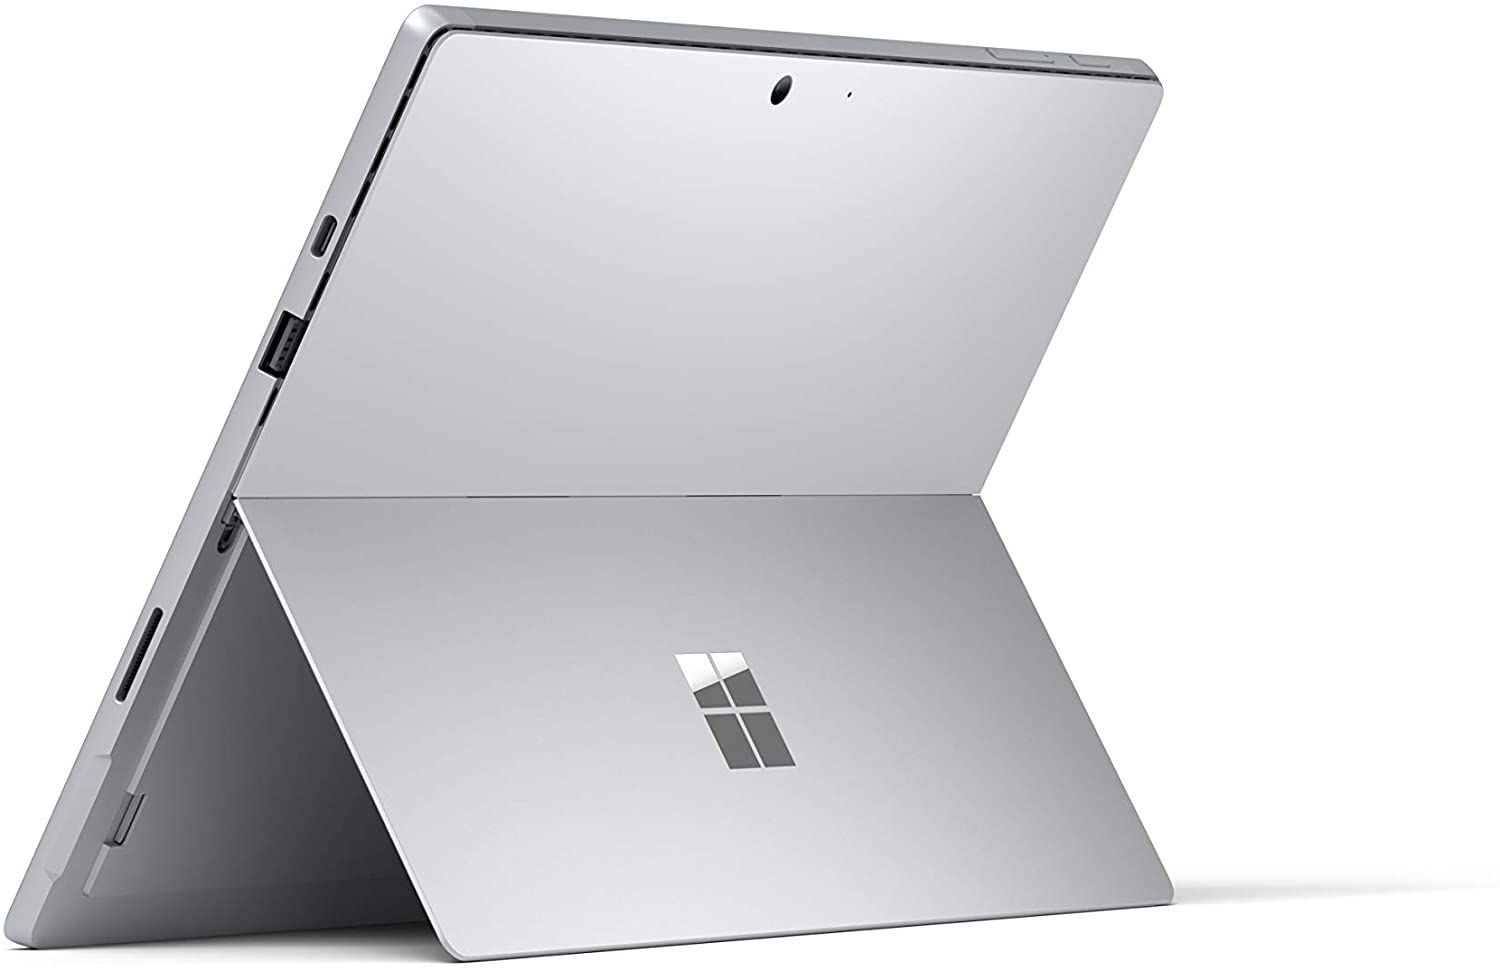 Microsoft Surface Pro 7 a